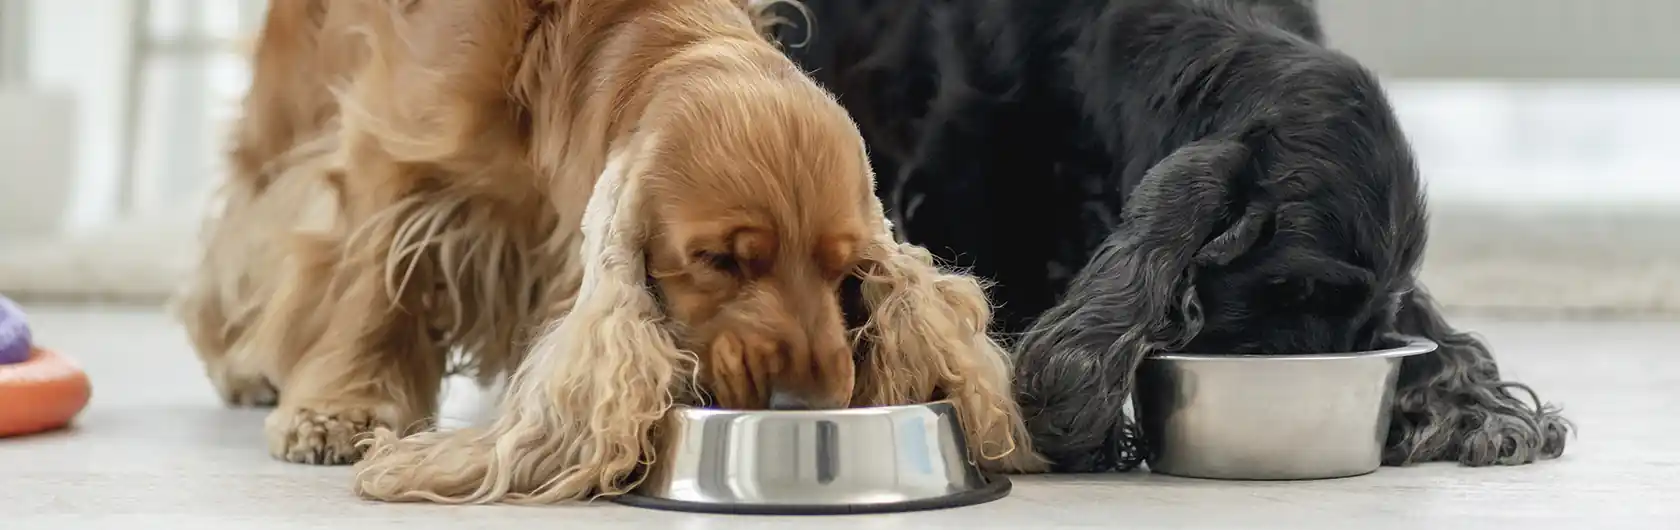 Control de Peso en Perros Adultos y la Importancia de una Dieta Balanceada y comida para perros de calidad nutribon